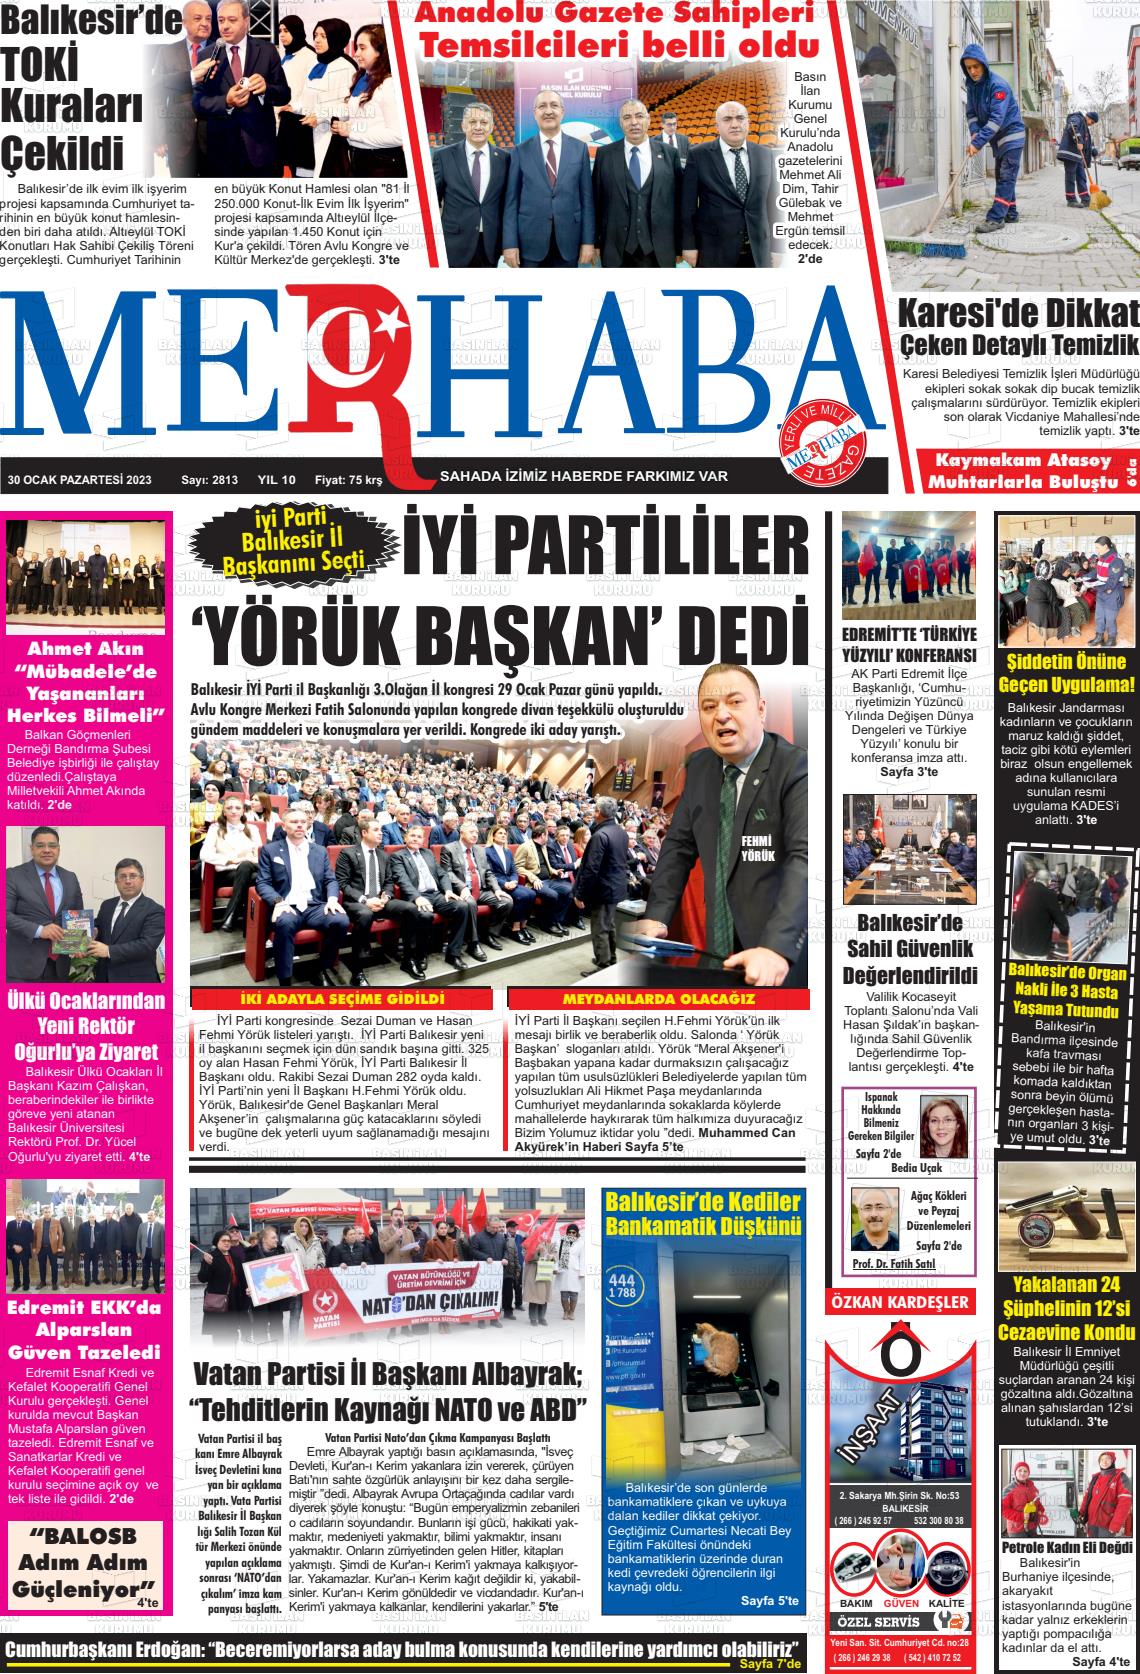 30 Ocak 2023 Büyükşehir Merhaba GAzetesi Gazete Manşeti